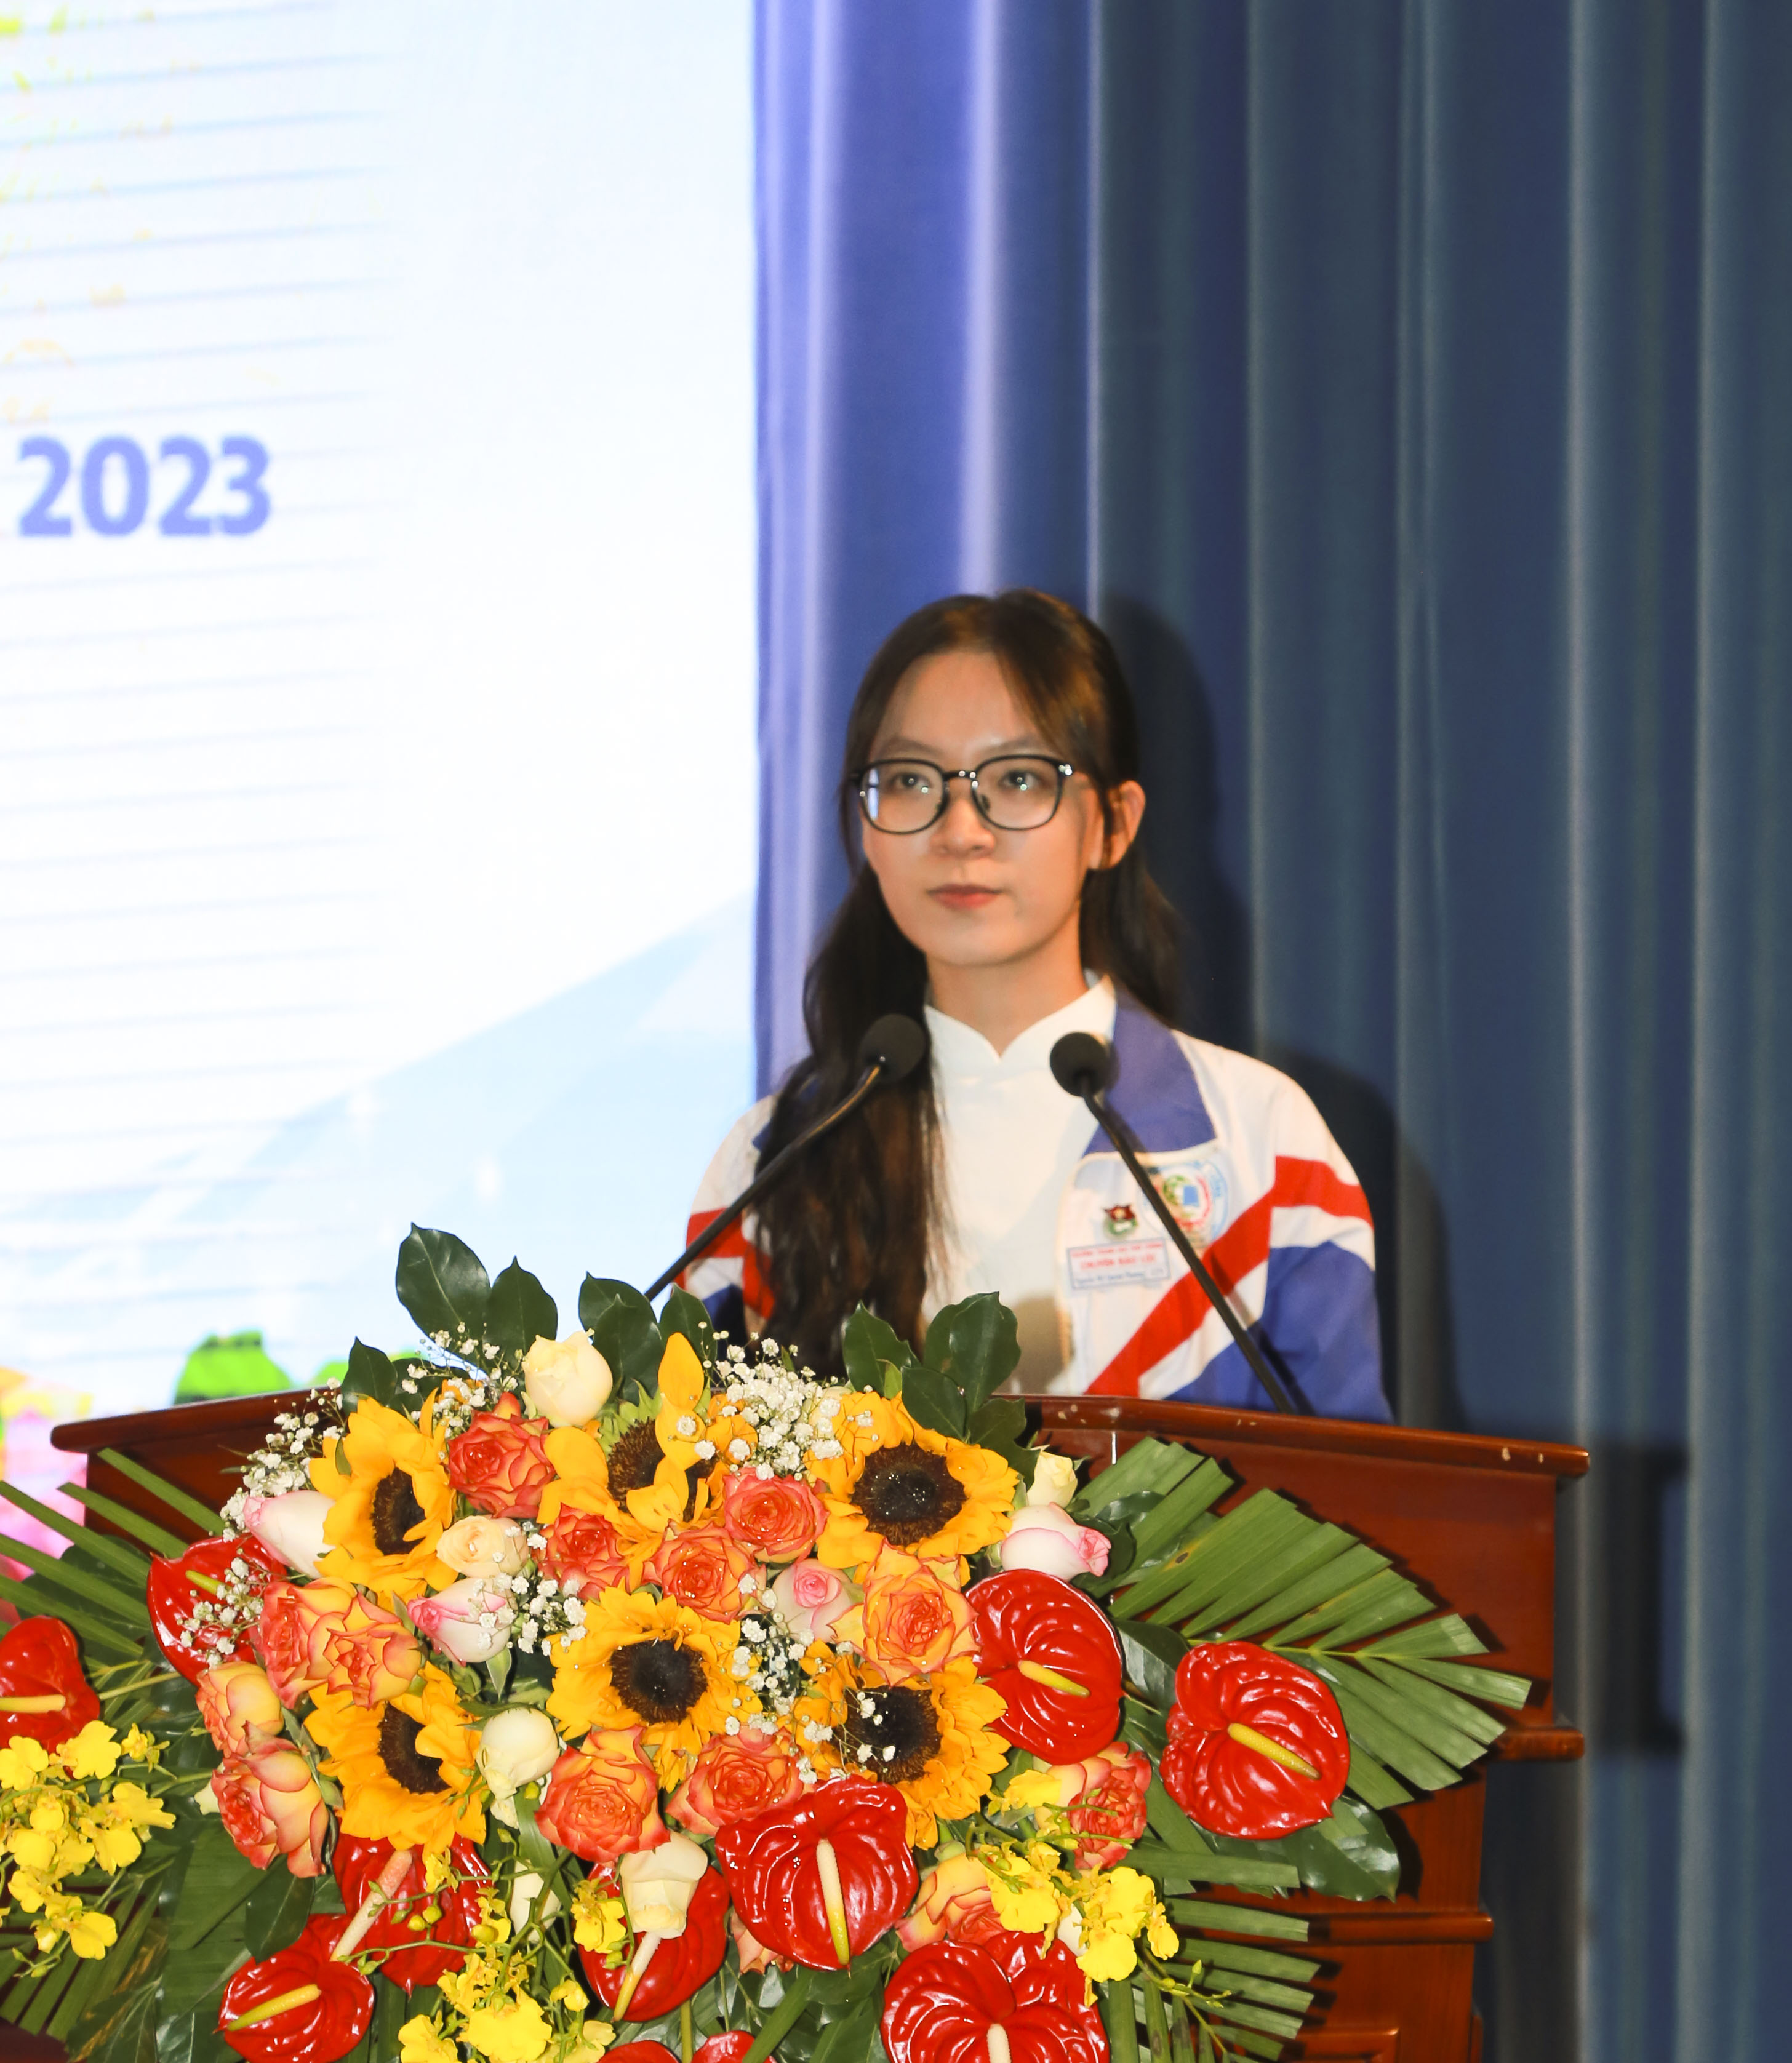 Lâm Đồng sẽ Tuyên dương – Khen thưởng 112 học sinh xuất sắc năm học 2023-2024